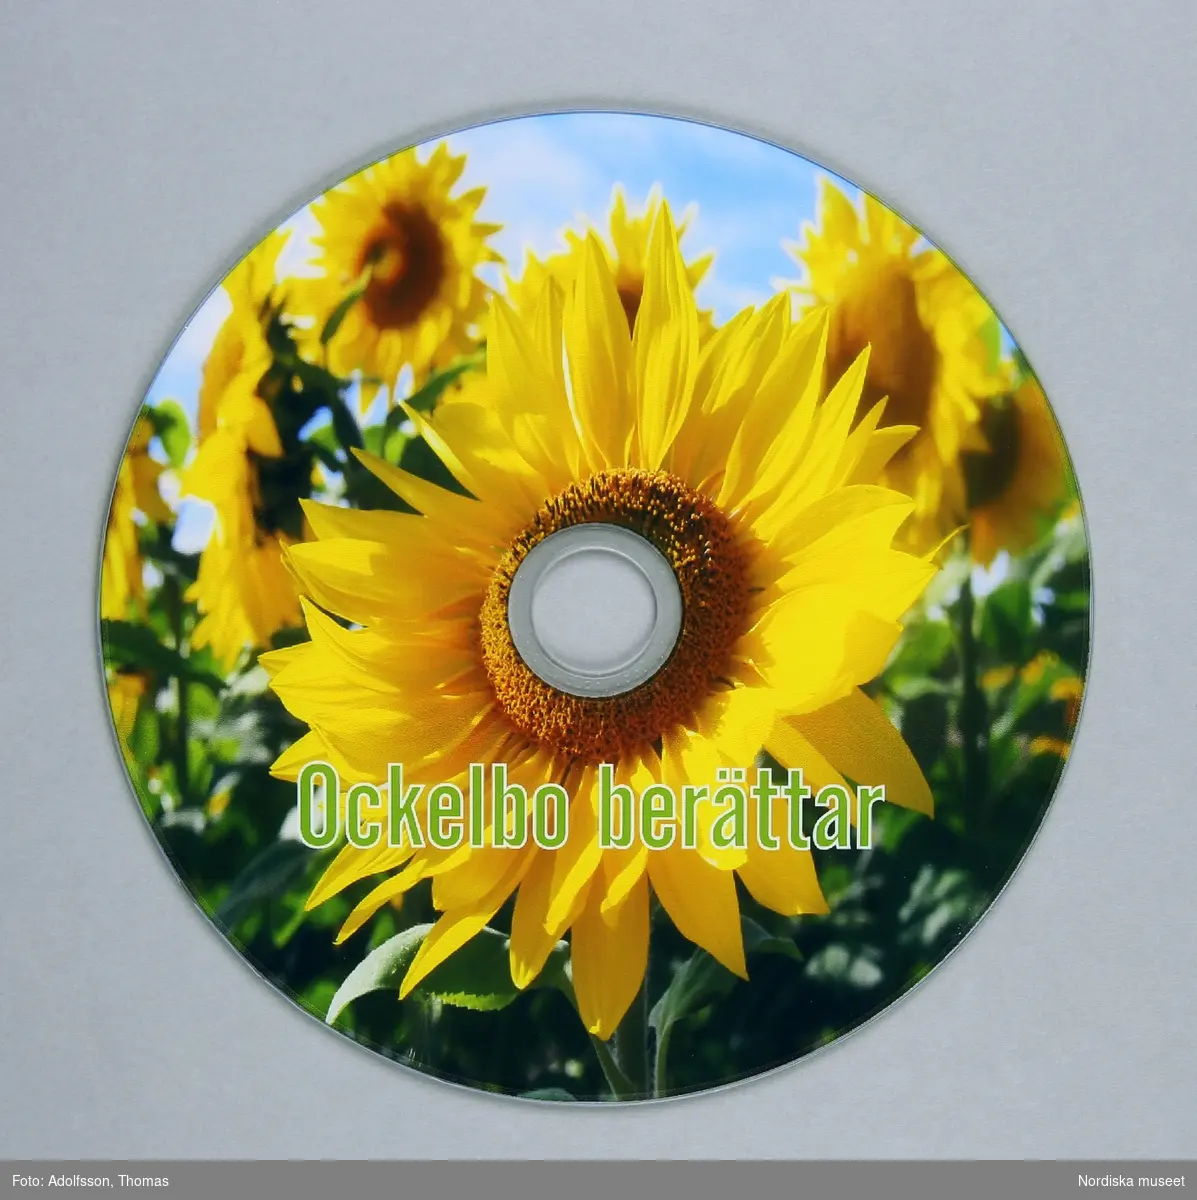 DVD-skiva av plast, hål i mitten, på ena sidan blank, på andra bild av solrosor och text "Ockelbo berättar".  Nummer instansat vid hålet "9361E1825 10860W03". 
/Leif Wallin 2015-01-08